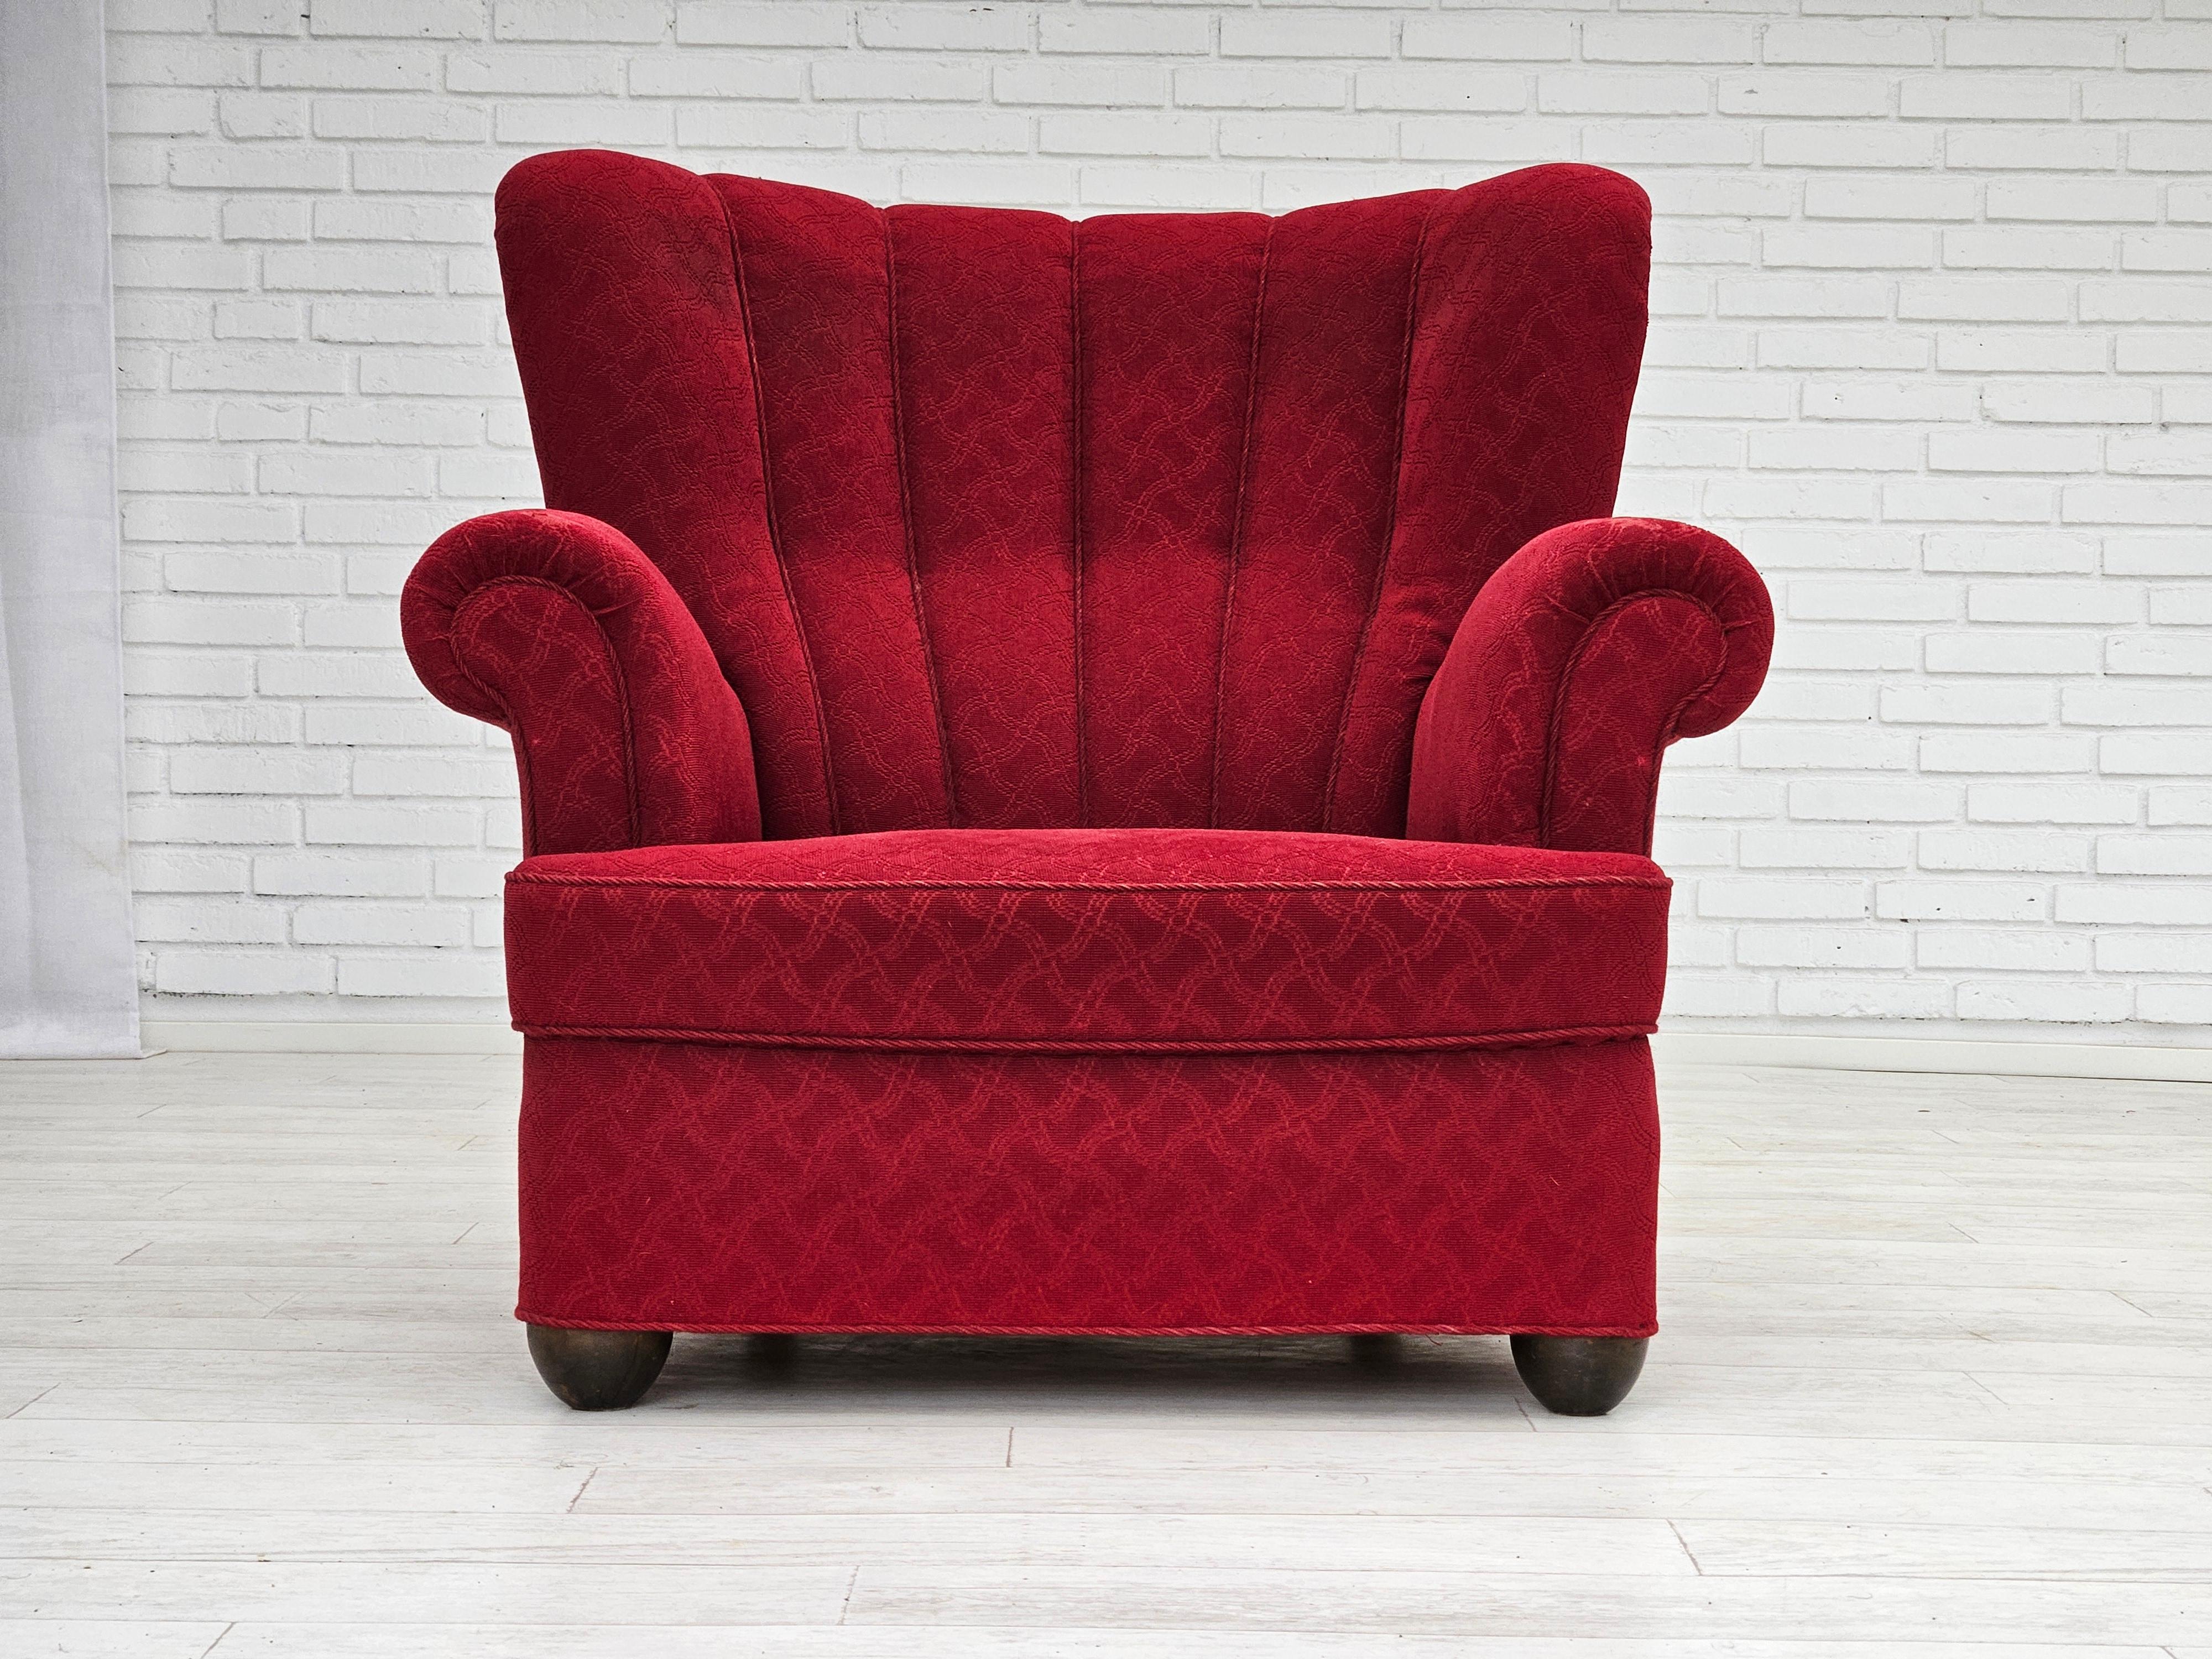 Fauteuil de relaxation danois des années 1960 en bon état d'origine : pas d'odeur ni de tache. Tissu d'ameublement original en coton/laine rouge, pieds en bois de chêne, ressorts en laiton dans l'assise. La surface du tissu de l'accoudoir avant est